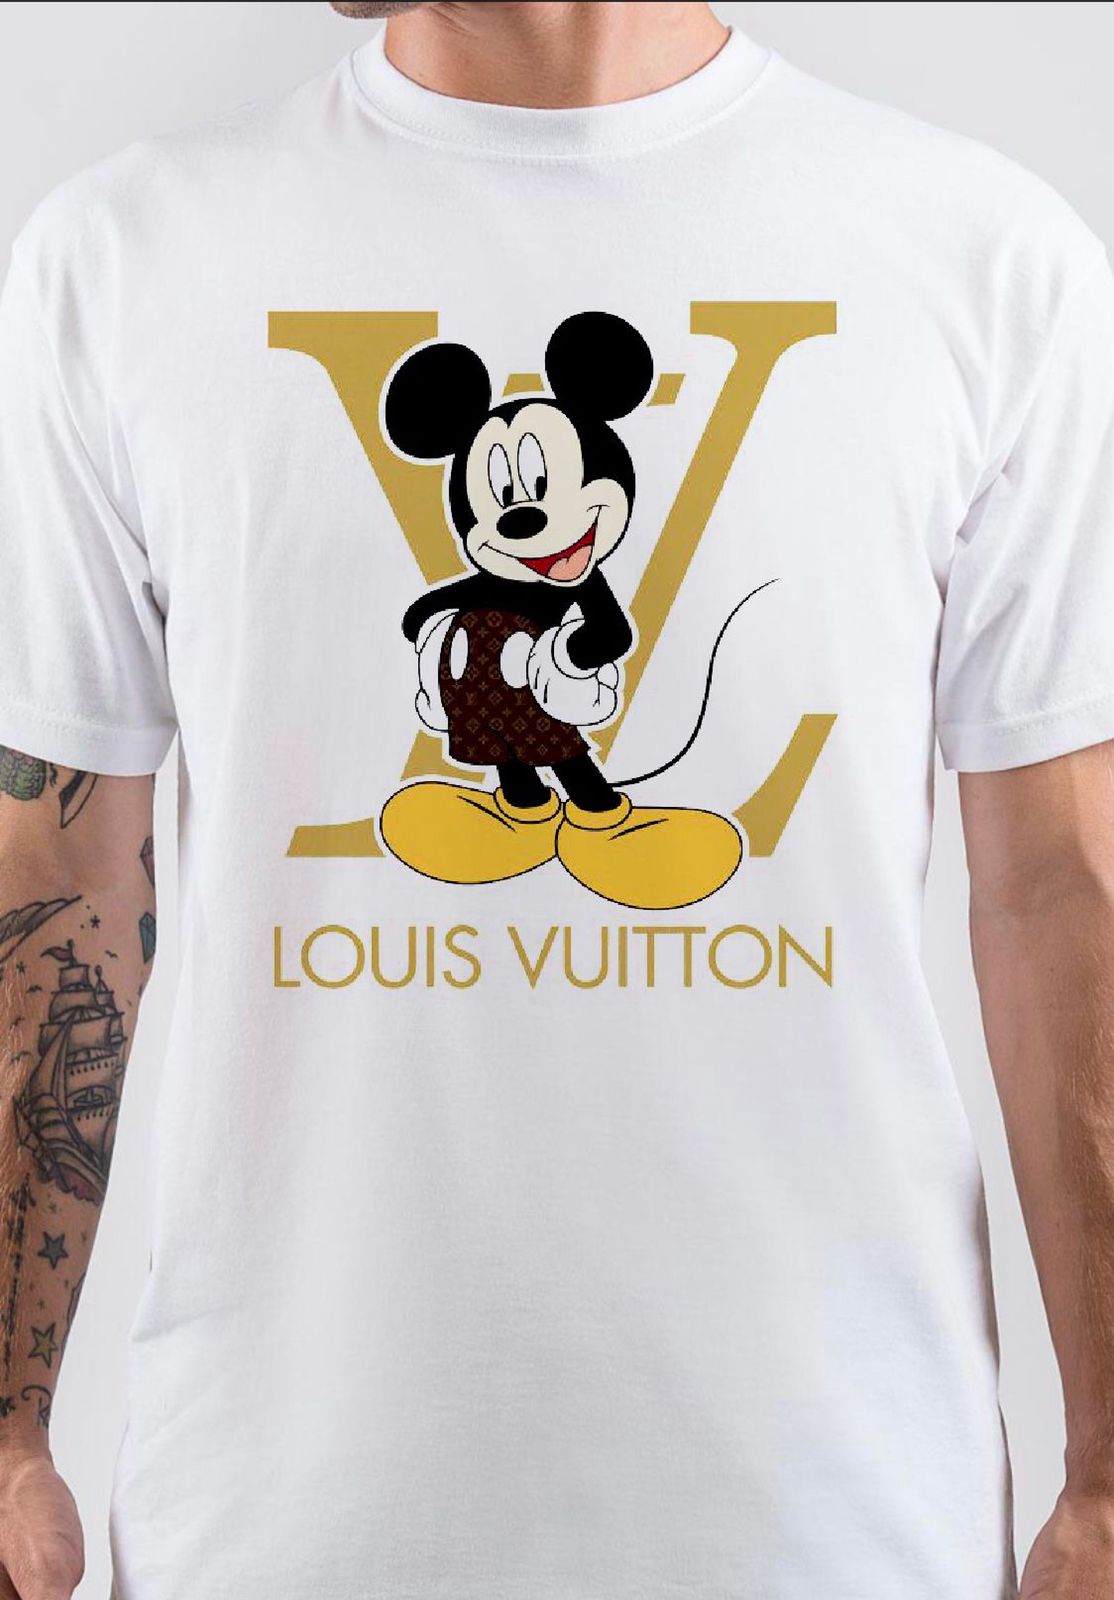 Buy Louis Vuitton Shirt, Louis Vuitton T Shirt, Louis Vuitton for Men Shirts,  Louis Vuitton Replicias Shirts, Louis Vuitton T-Shirt Online at  desertcartINDIA